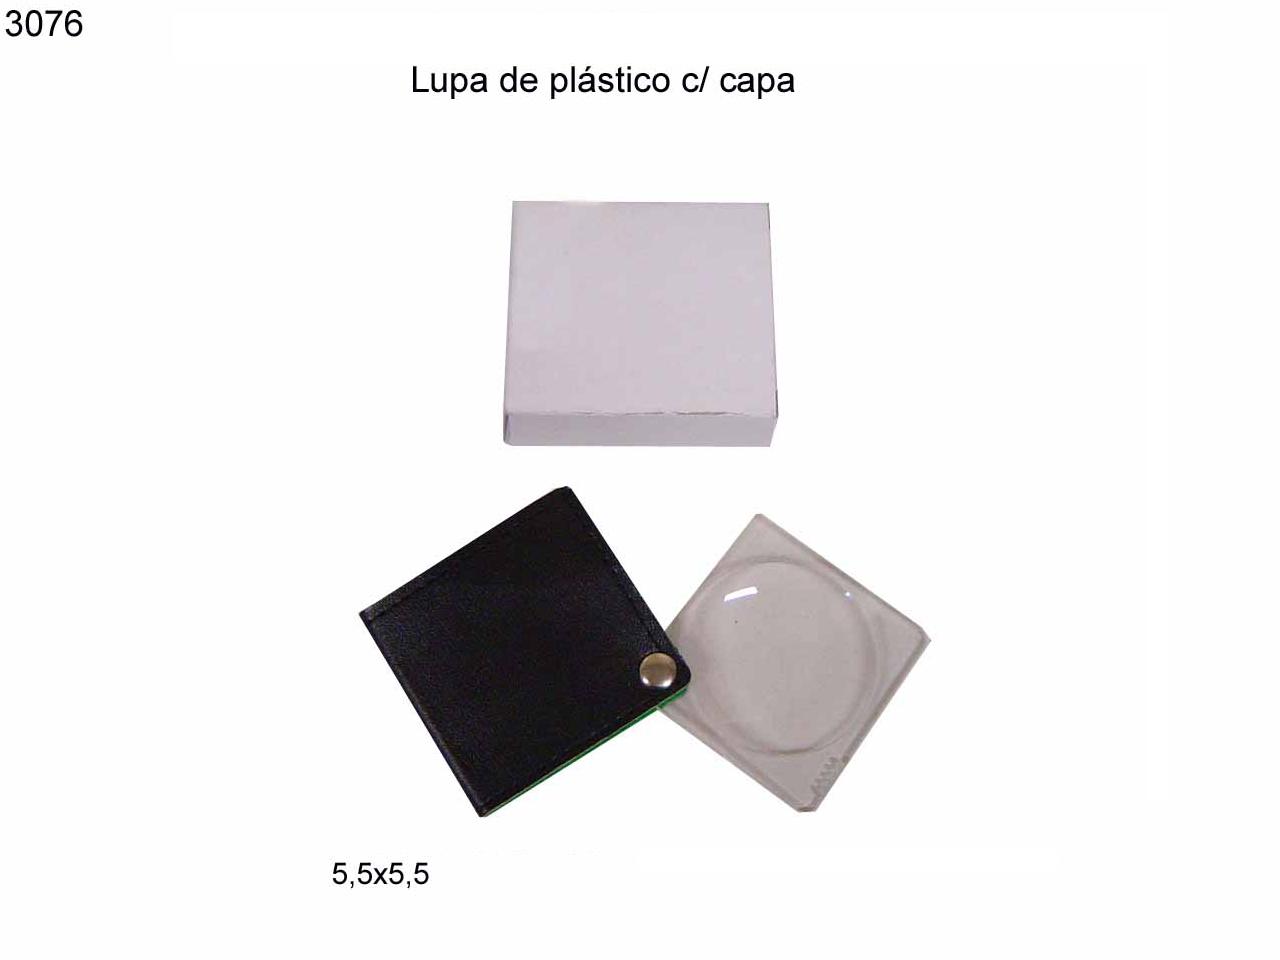 Lupa de plastico c/ capa (3076)